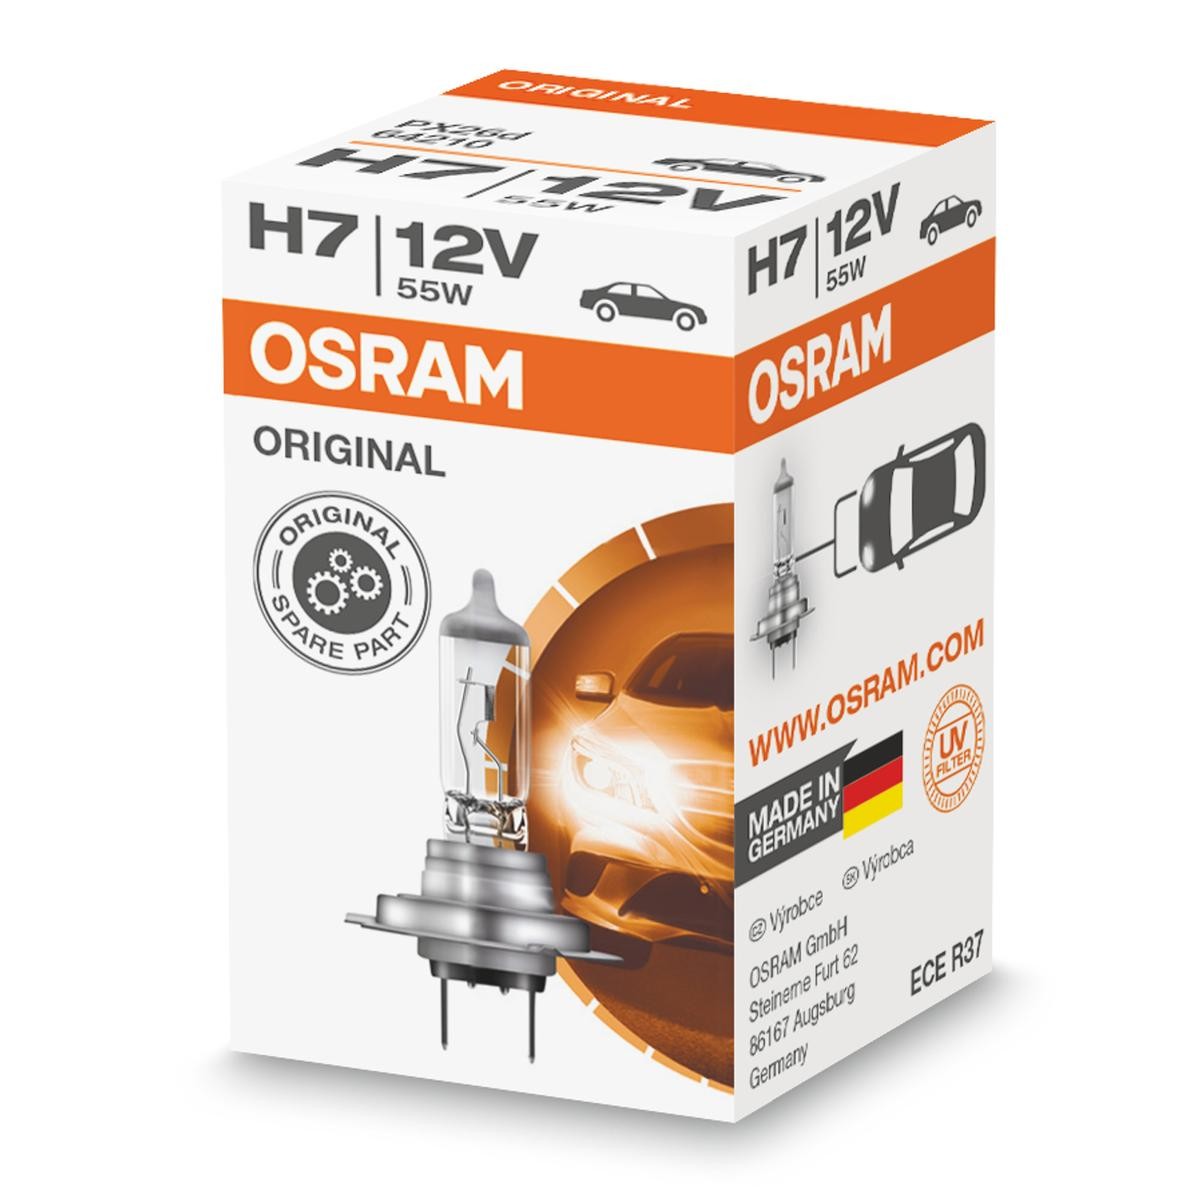 Vesz H7 OSRAM ORIGINAL LINE H7 12V 55W 3200K Halogén Izzó, távfényszóró 64210L alacsony áron